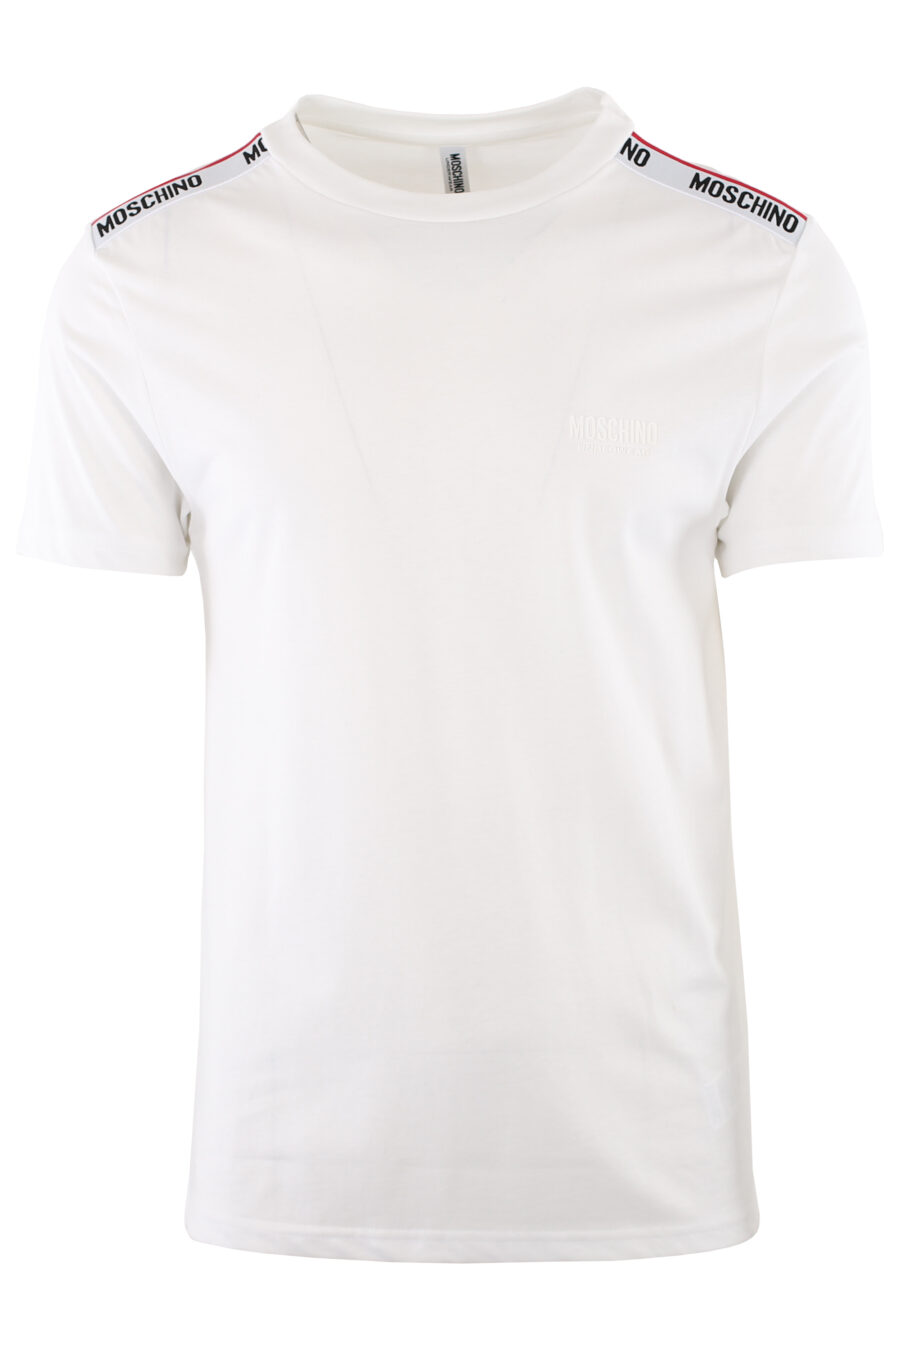 Weißes T-Shirt mit Logo auf der Schulterpartie - IMG 7415